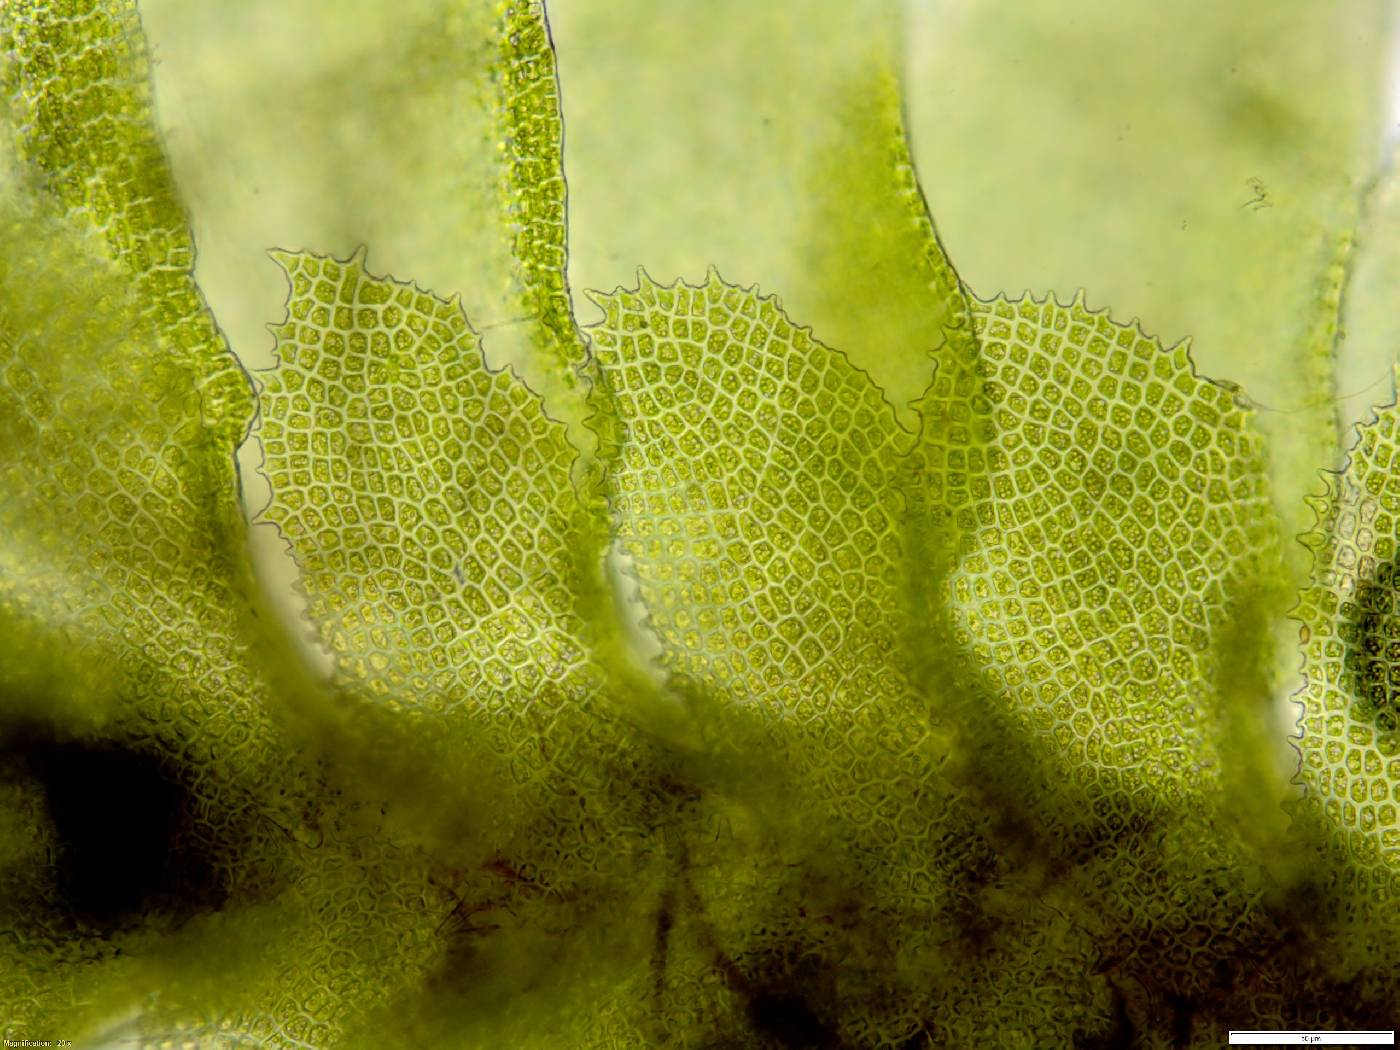 Diplophyllum apiculatum image